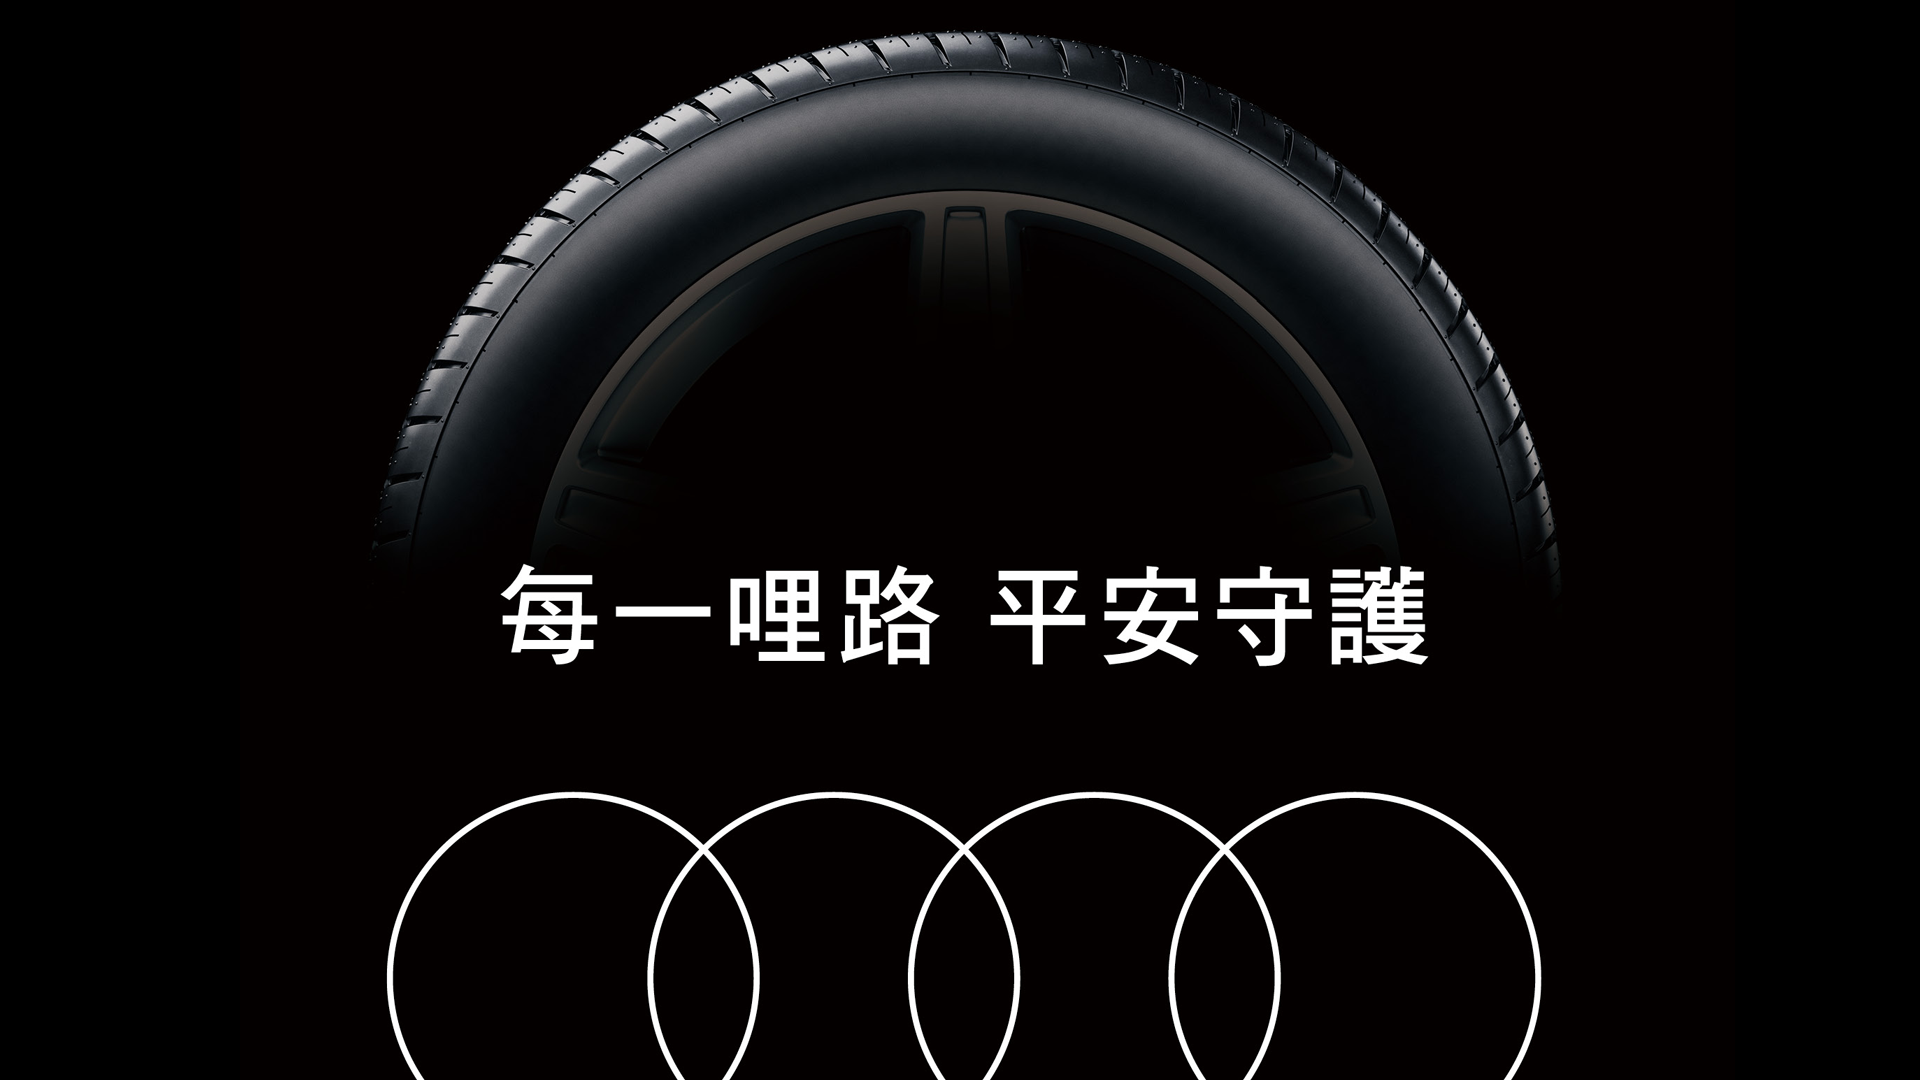 Tire-Warranty_1920x1080.png